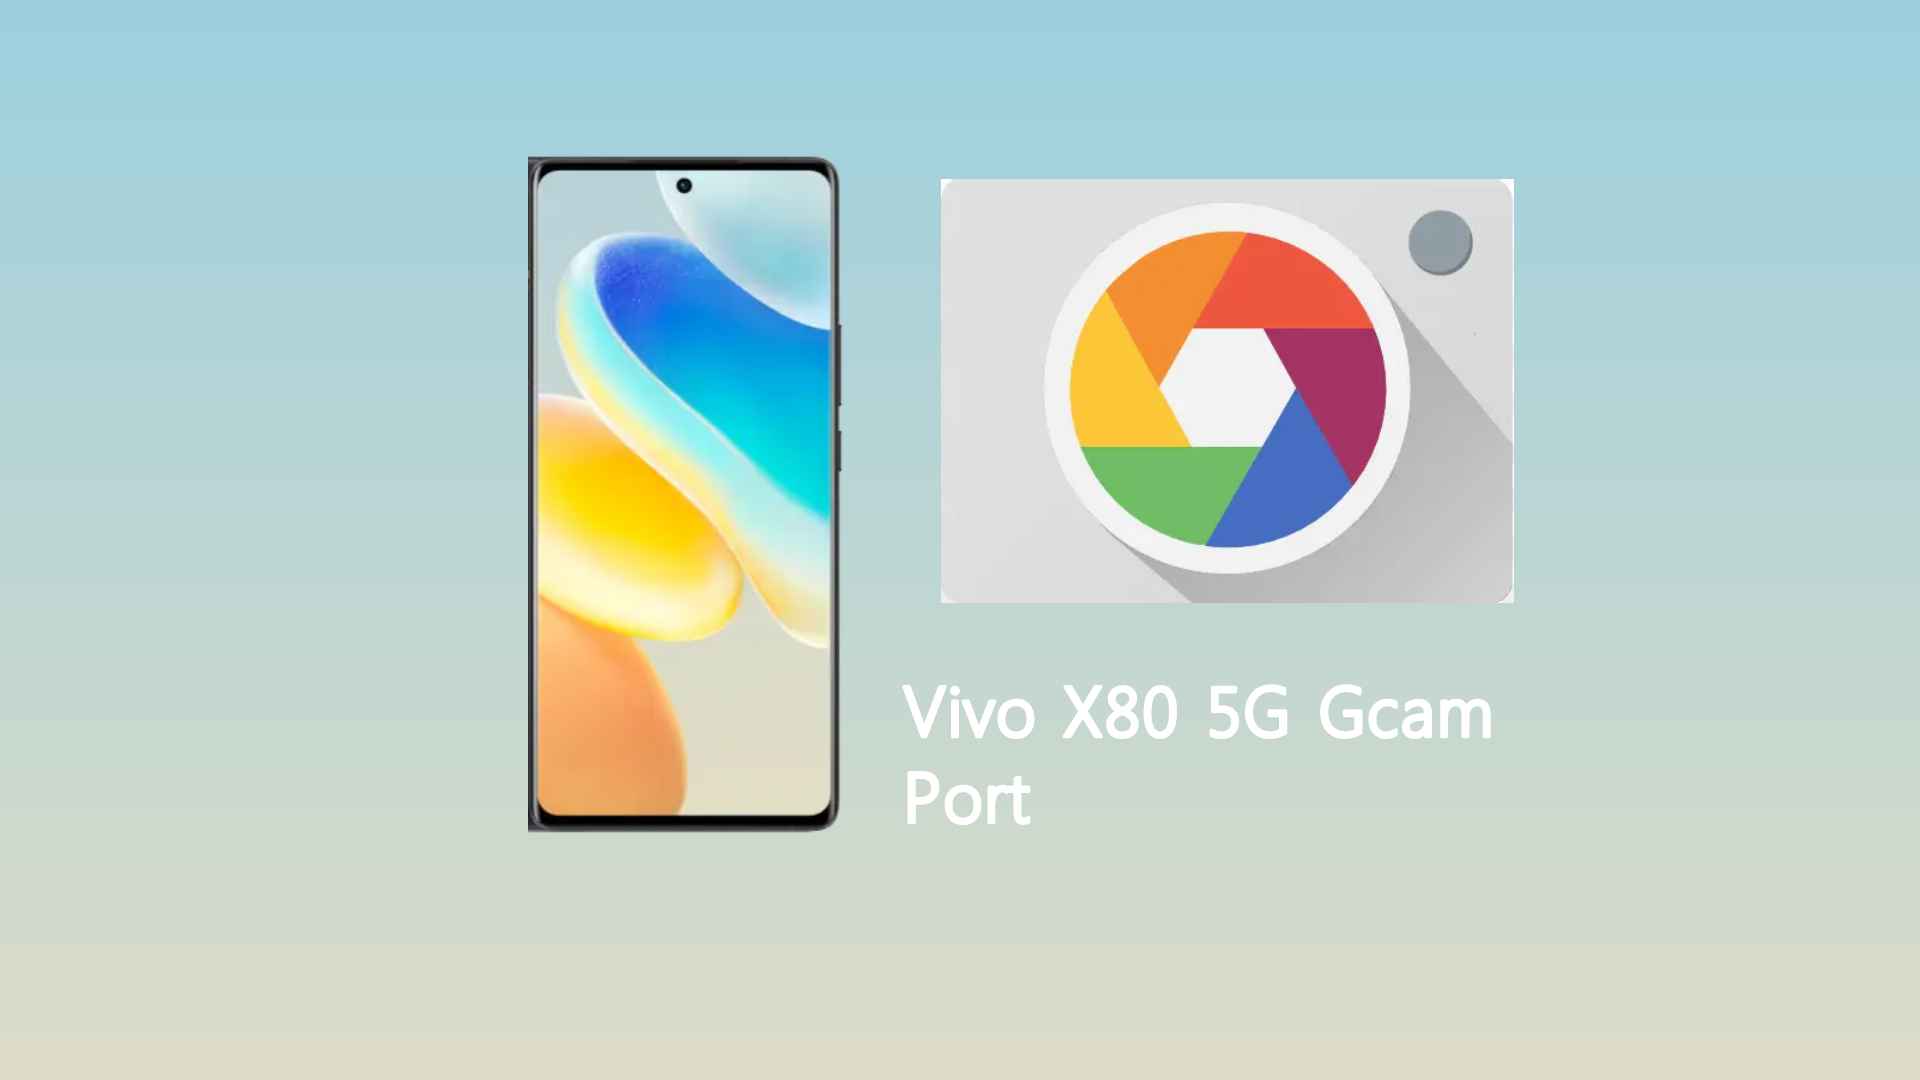 Vivo X80 5G Gcam Port